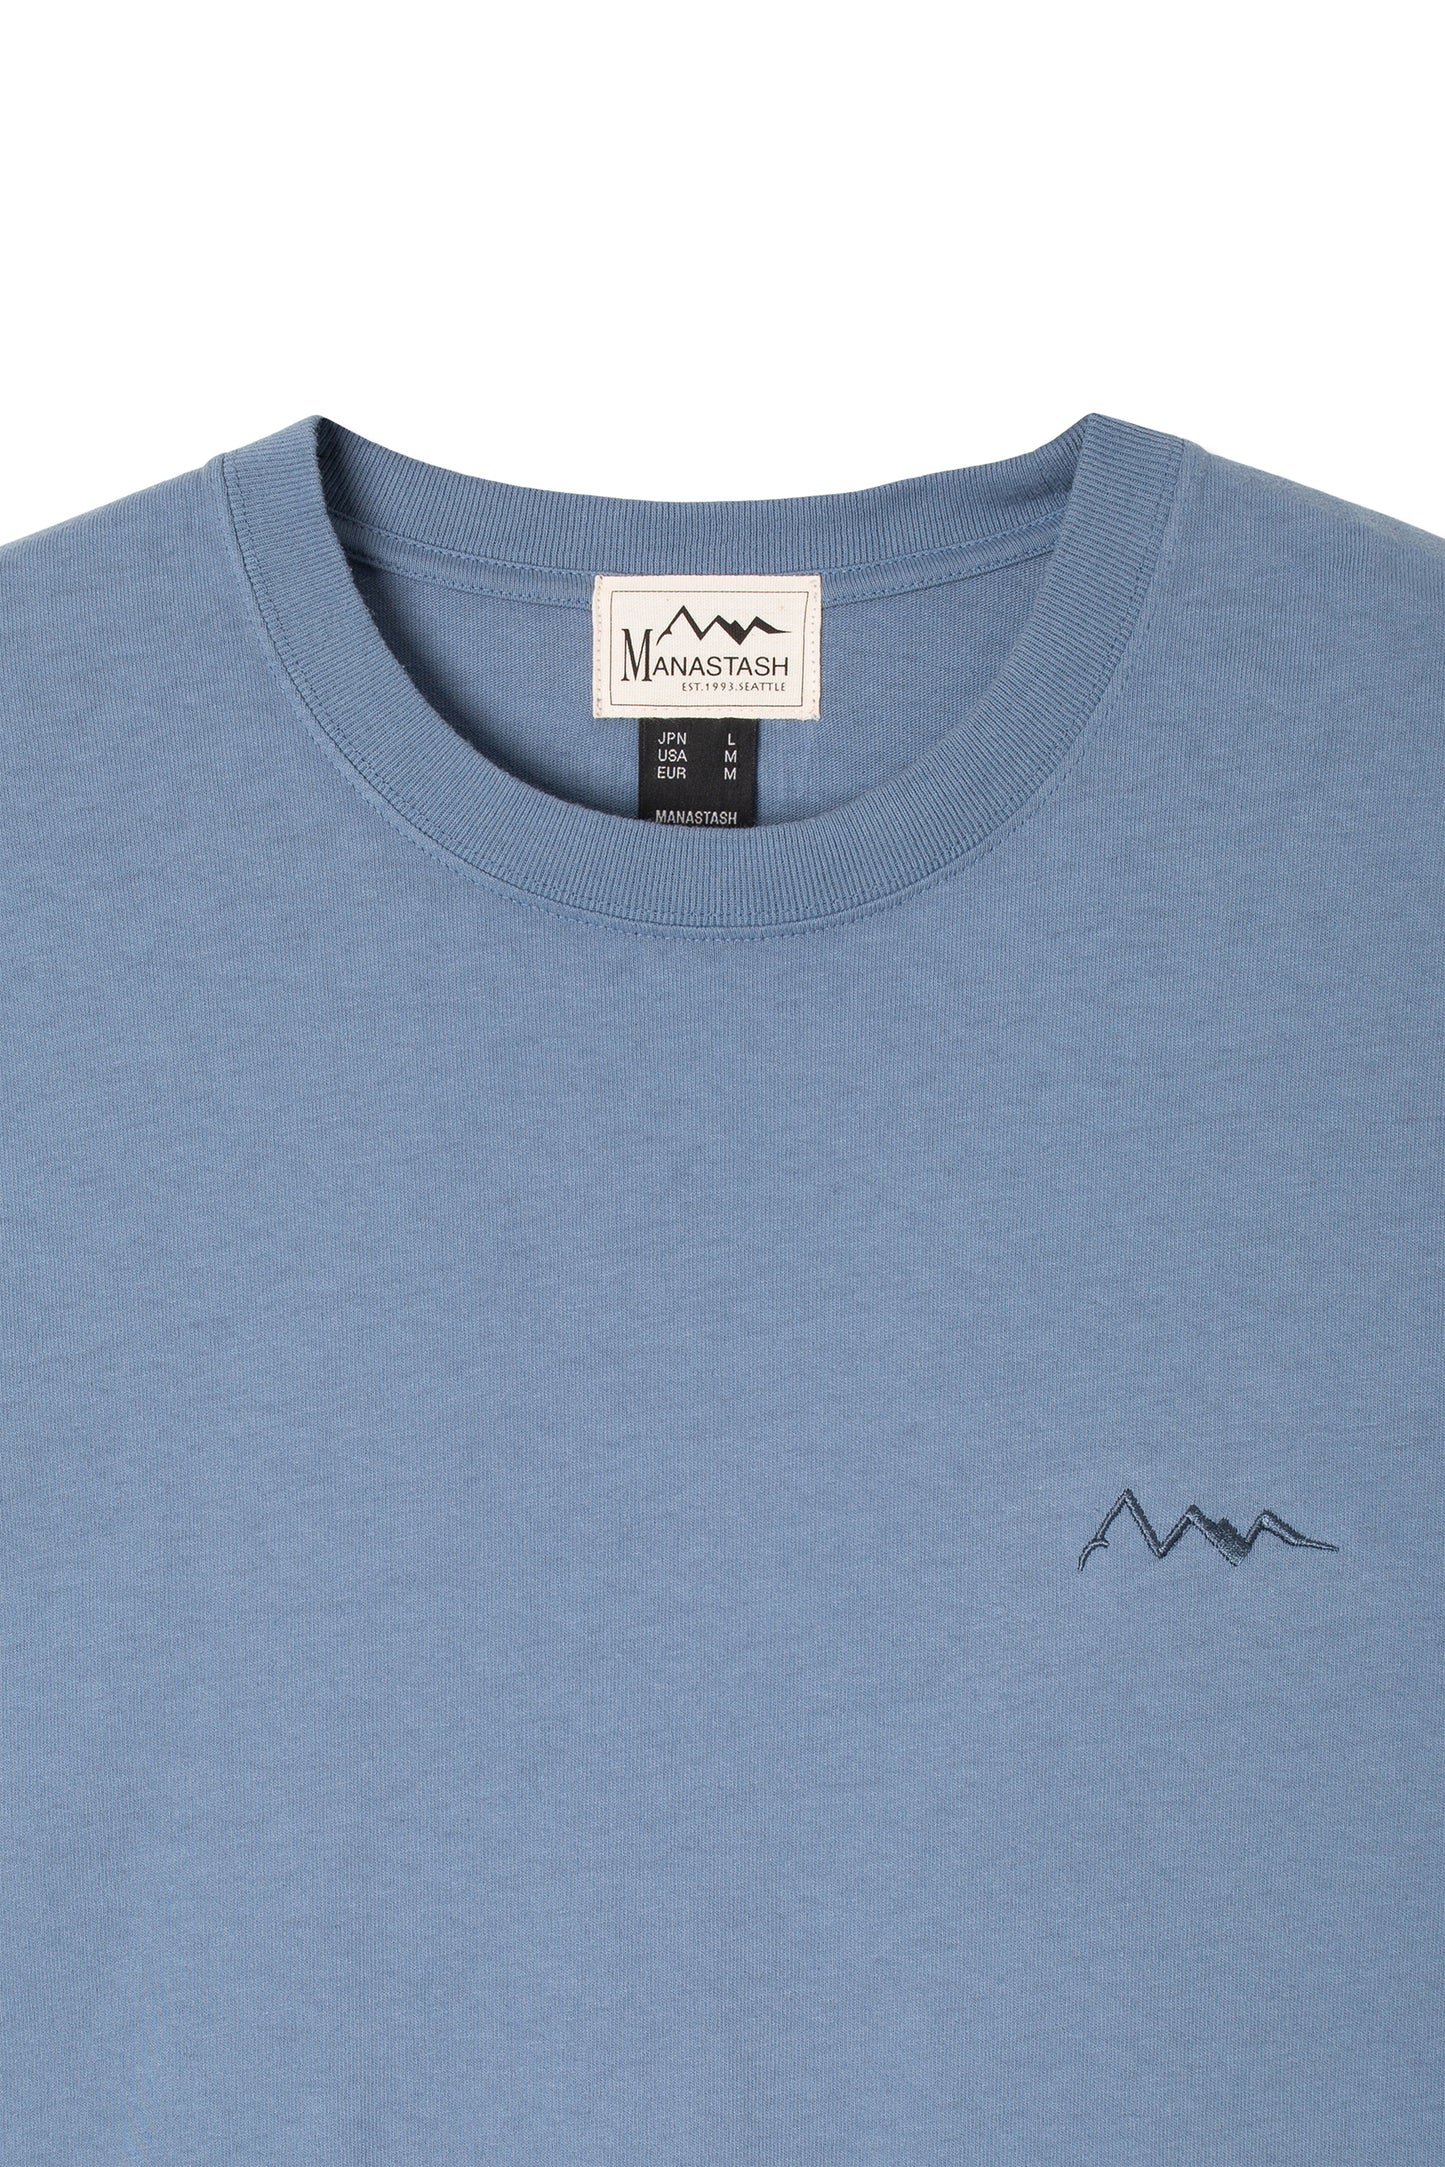 Mountain Logo Tee (Blue)